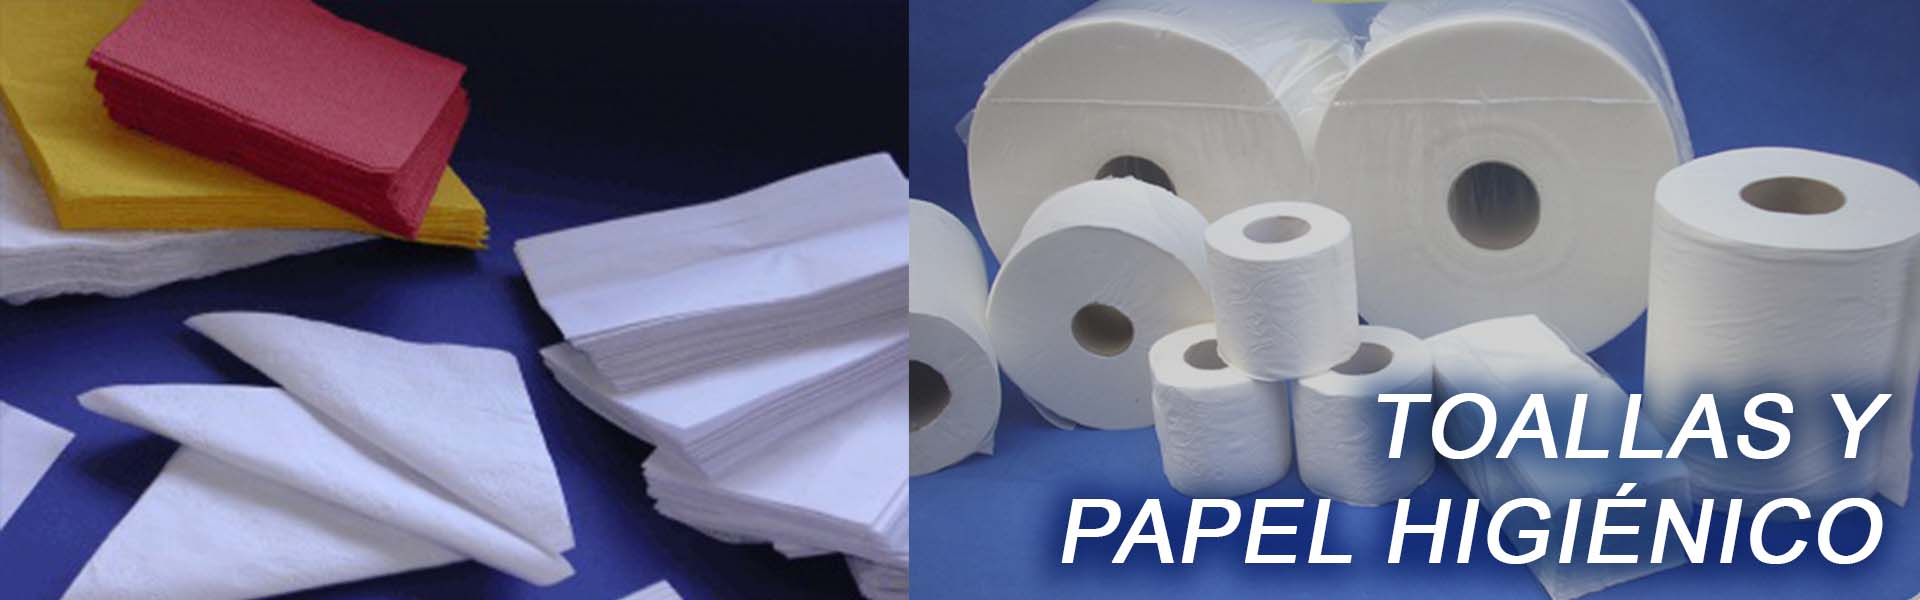 papel higienico y toallas distribuidora delsur